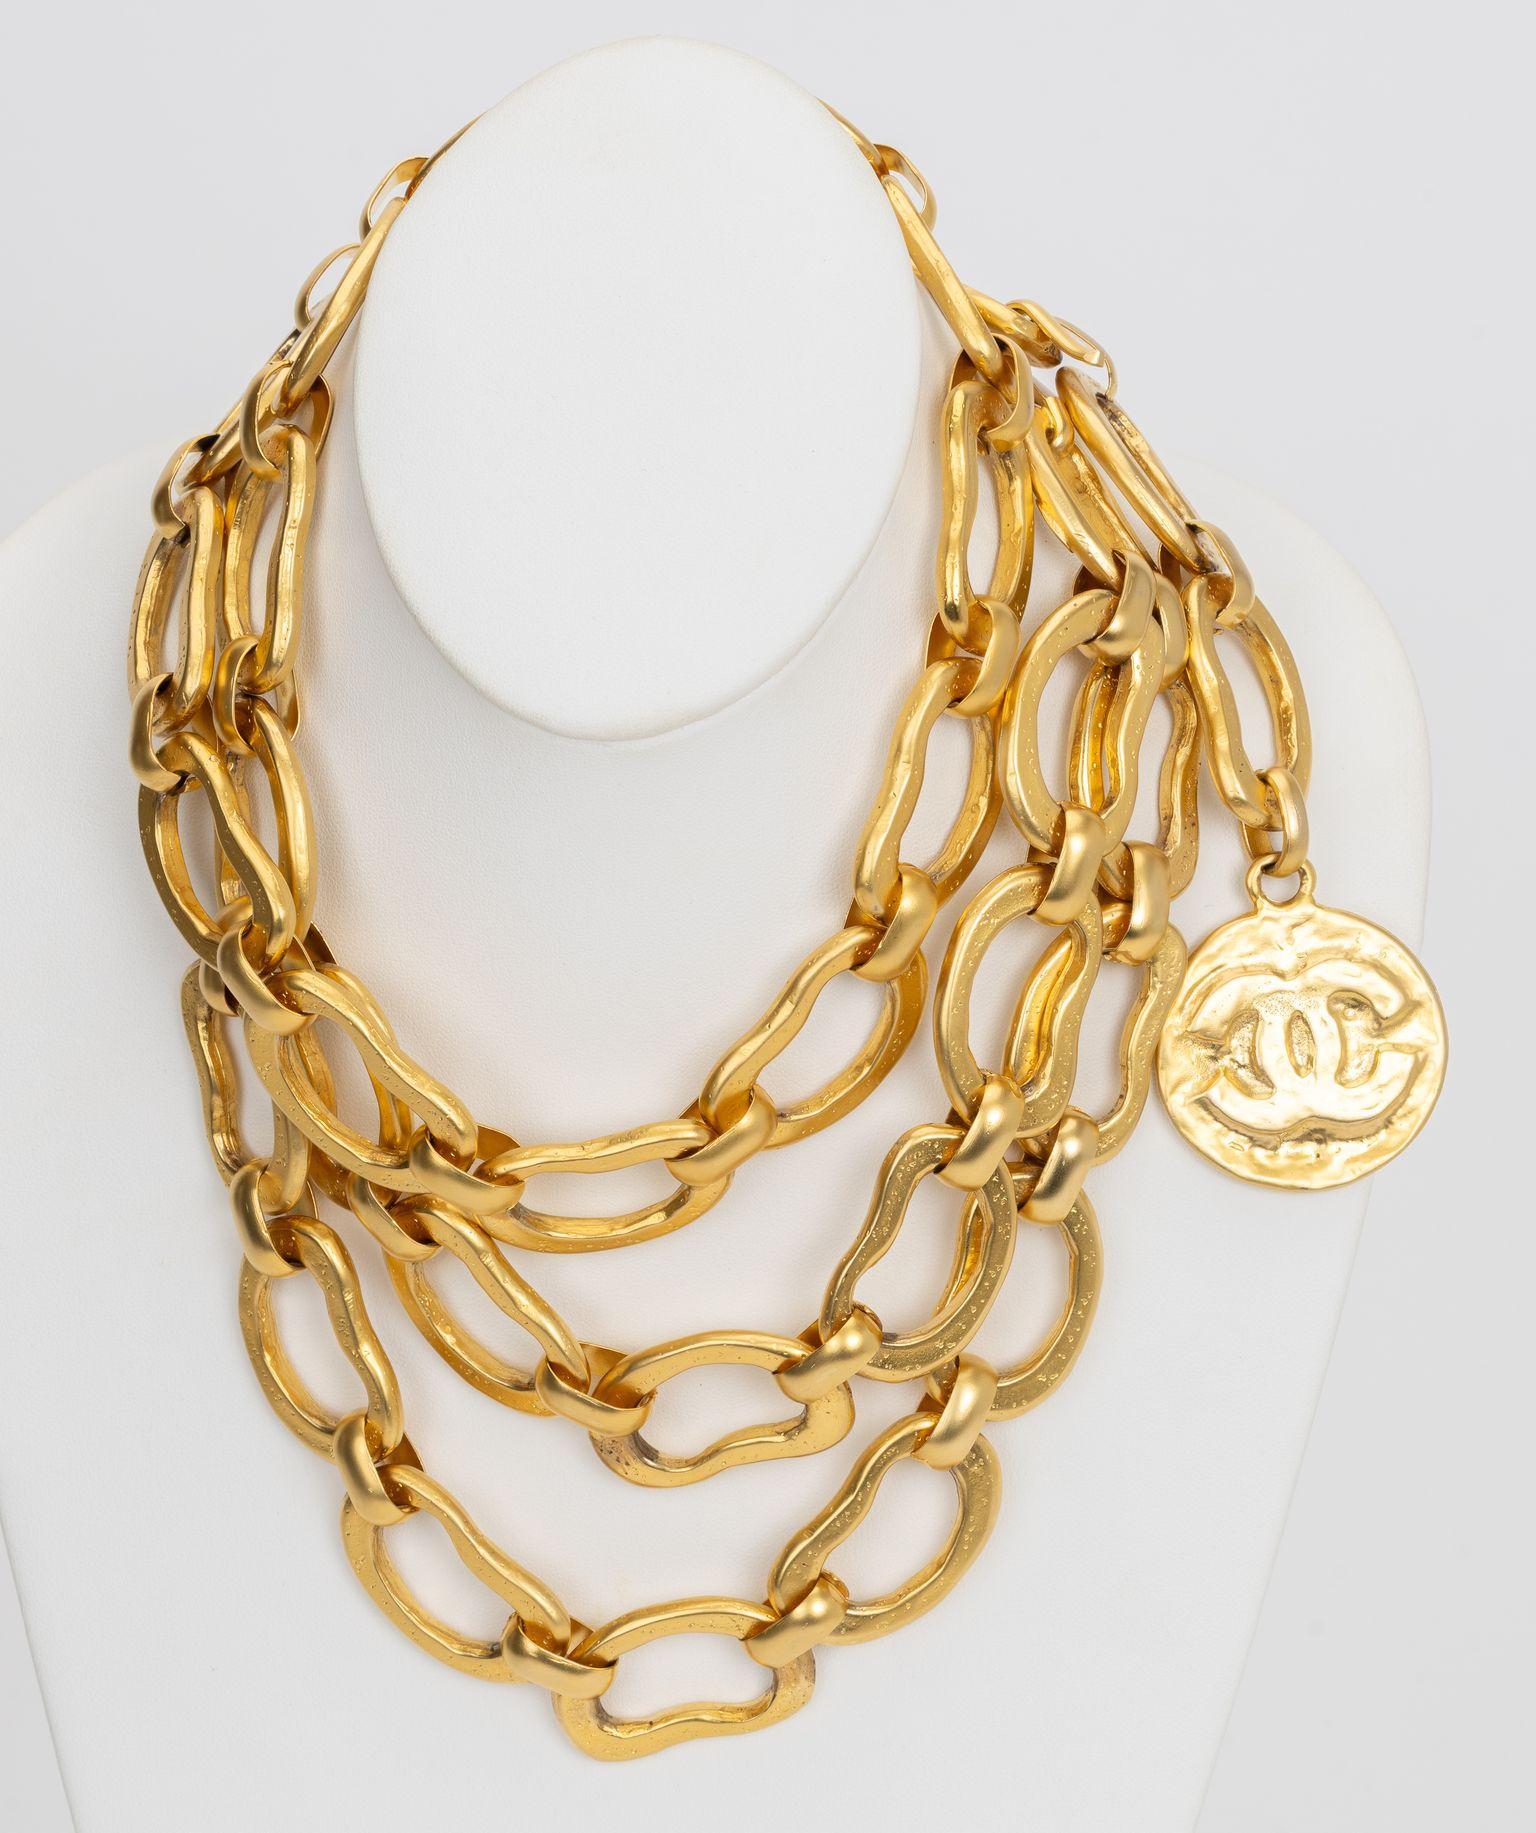 Chanel Sammlerstück Gürtel/Halskette mit zwei Strängen. Satinierte Goldoberfläche und cc-Goldmünzen-Charme. Can als Halskette lang, doppelt oder als Gürtel getragen werden. Collection'S Herbst 93, kommt mit Originalverpackung.